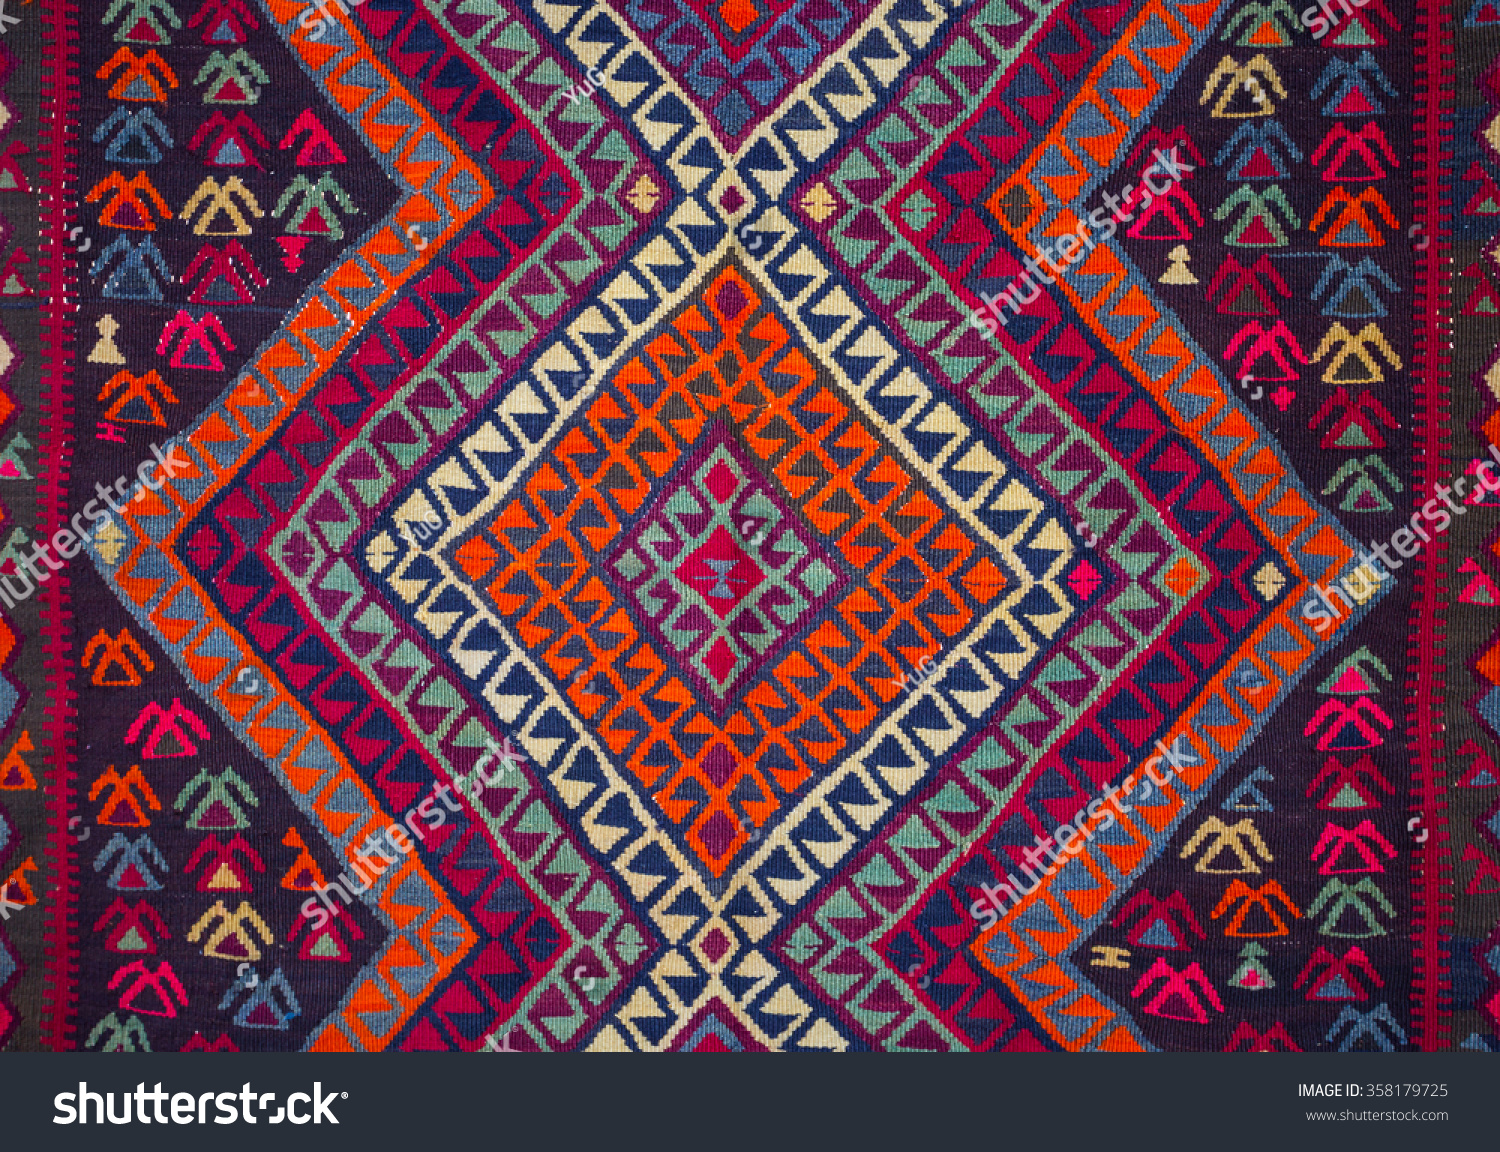 Текстиль с армянский орнаментом